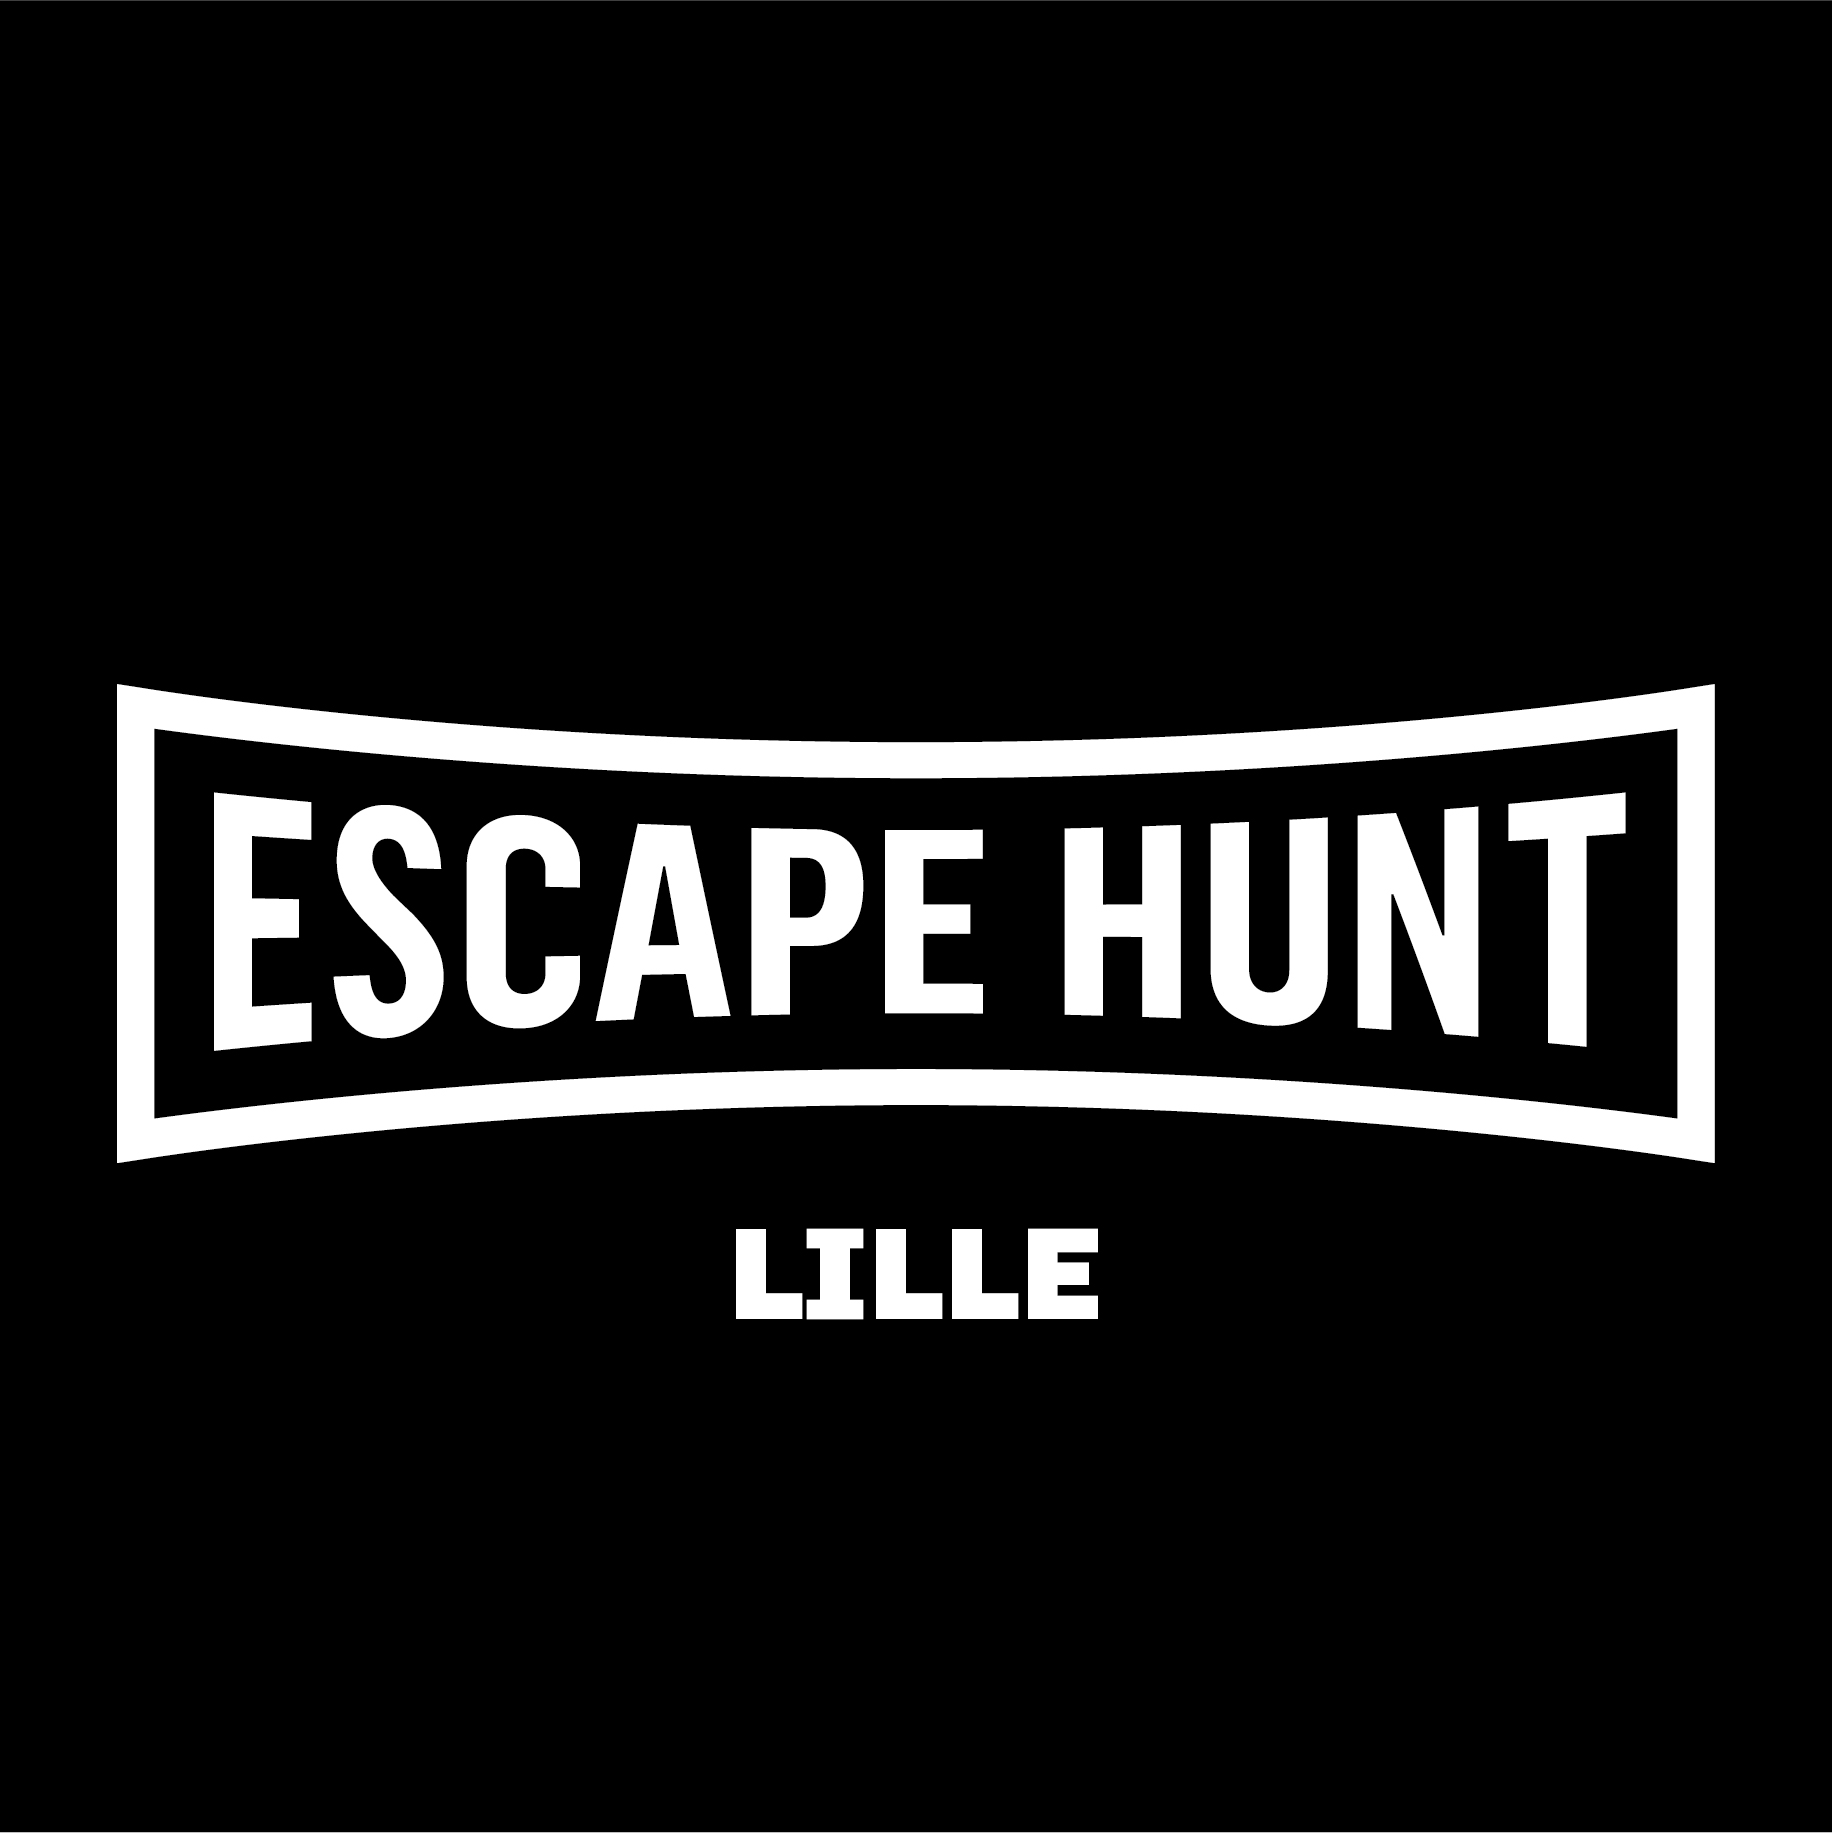 Escape Hunt Lille